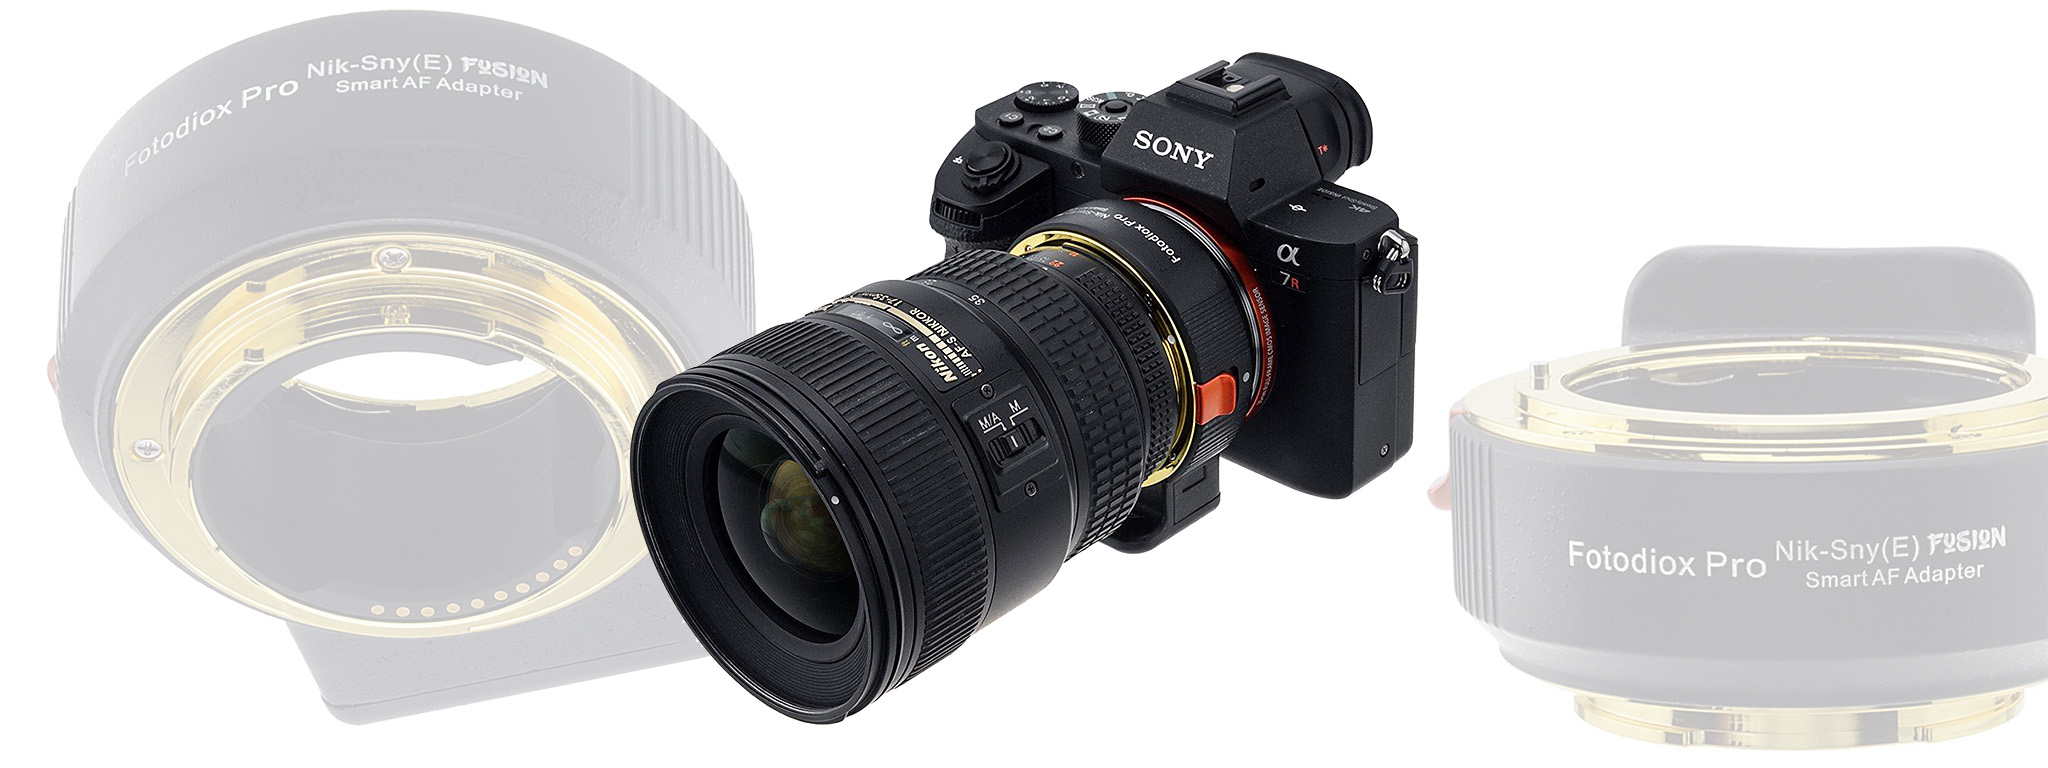 Ngàm chuyển Nikon F sang Sony E mount: Hỗ trợ AF, chống rung, EXIF, giá $370